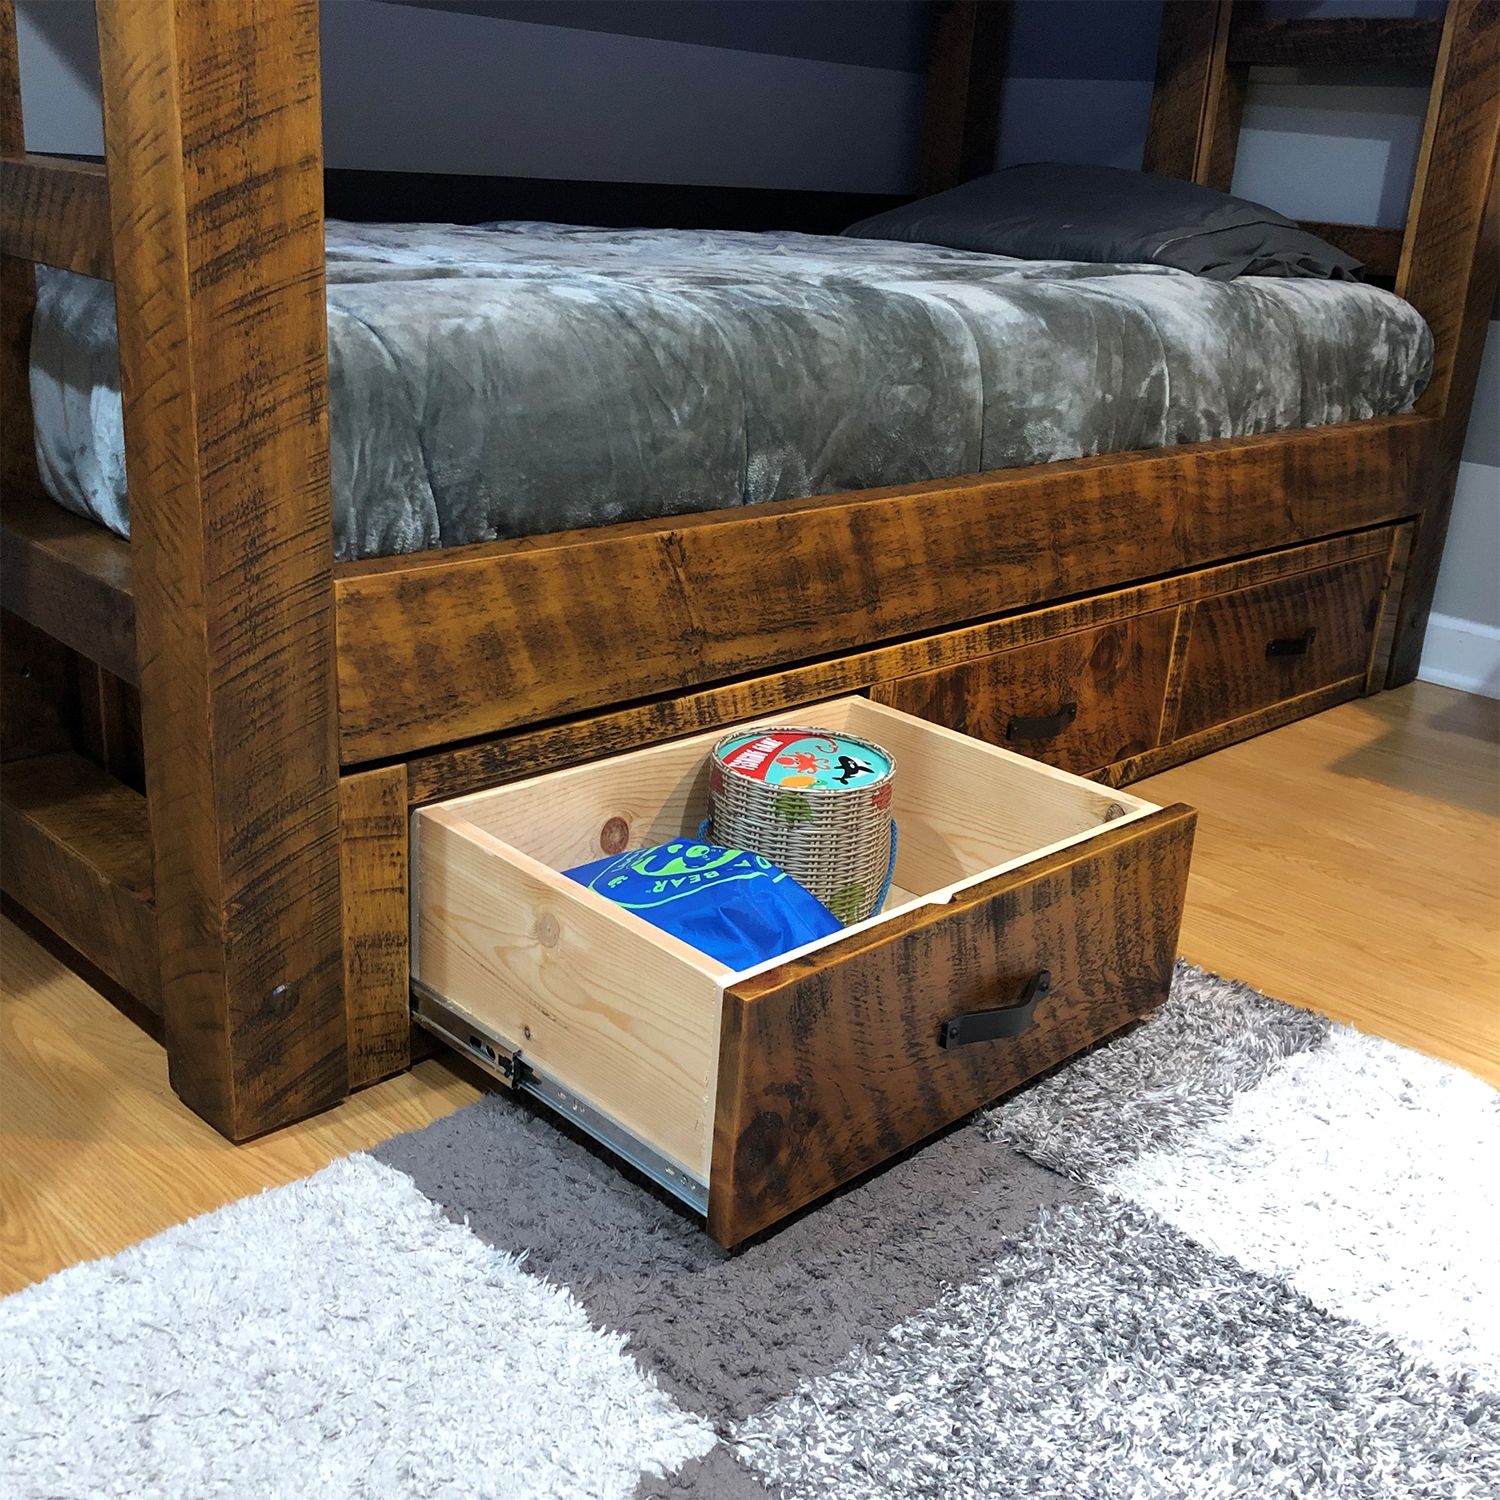 How to Babyproof Your Platform Bed - Platform Beds Online Blog